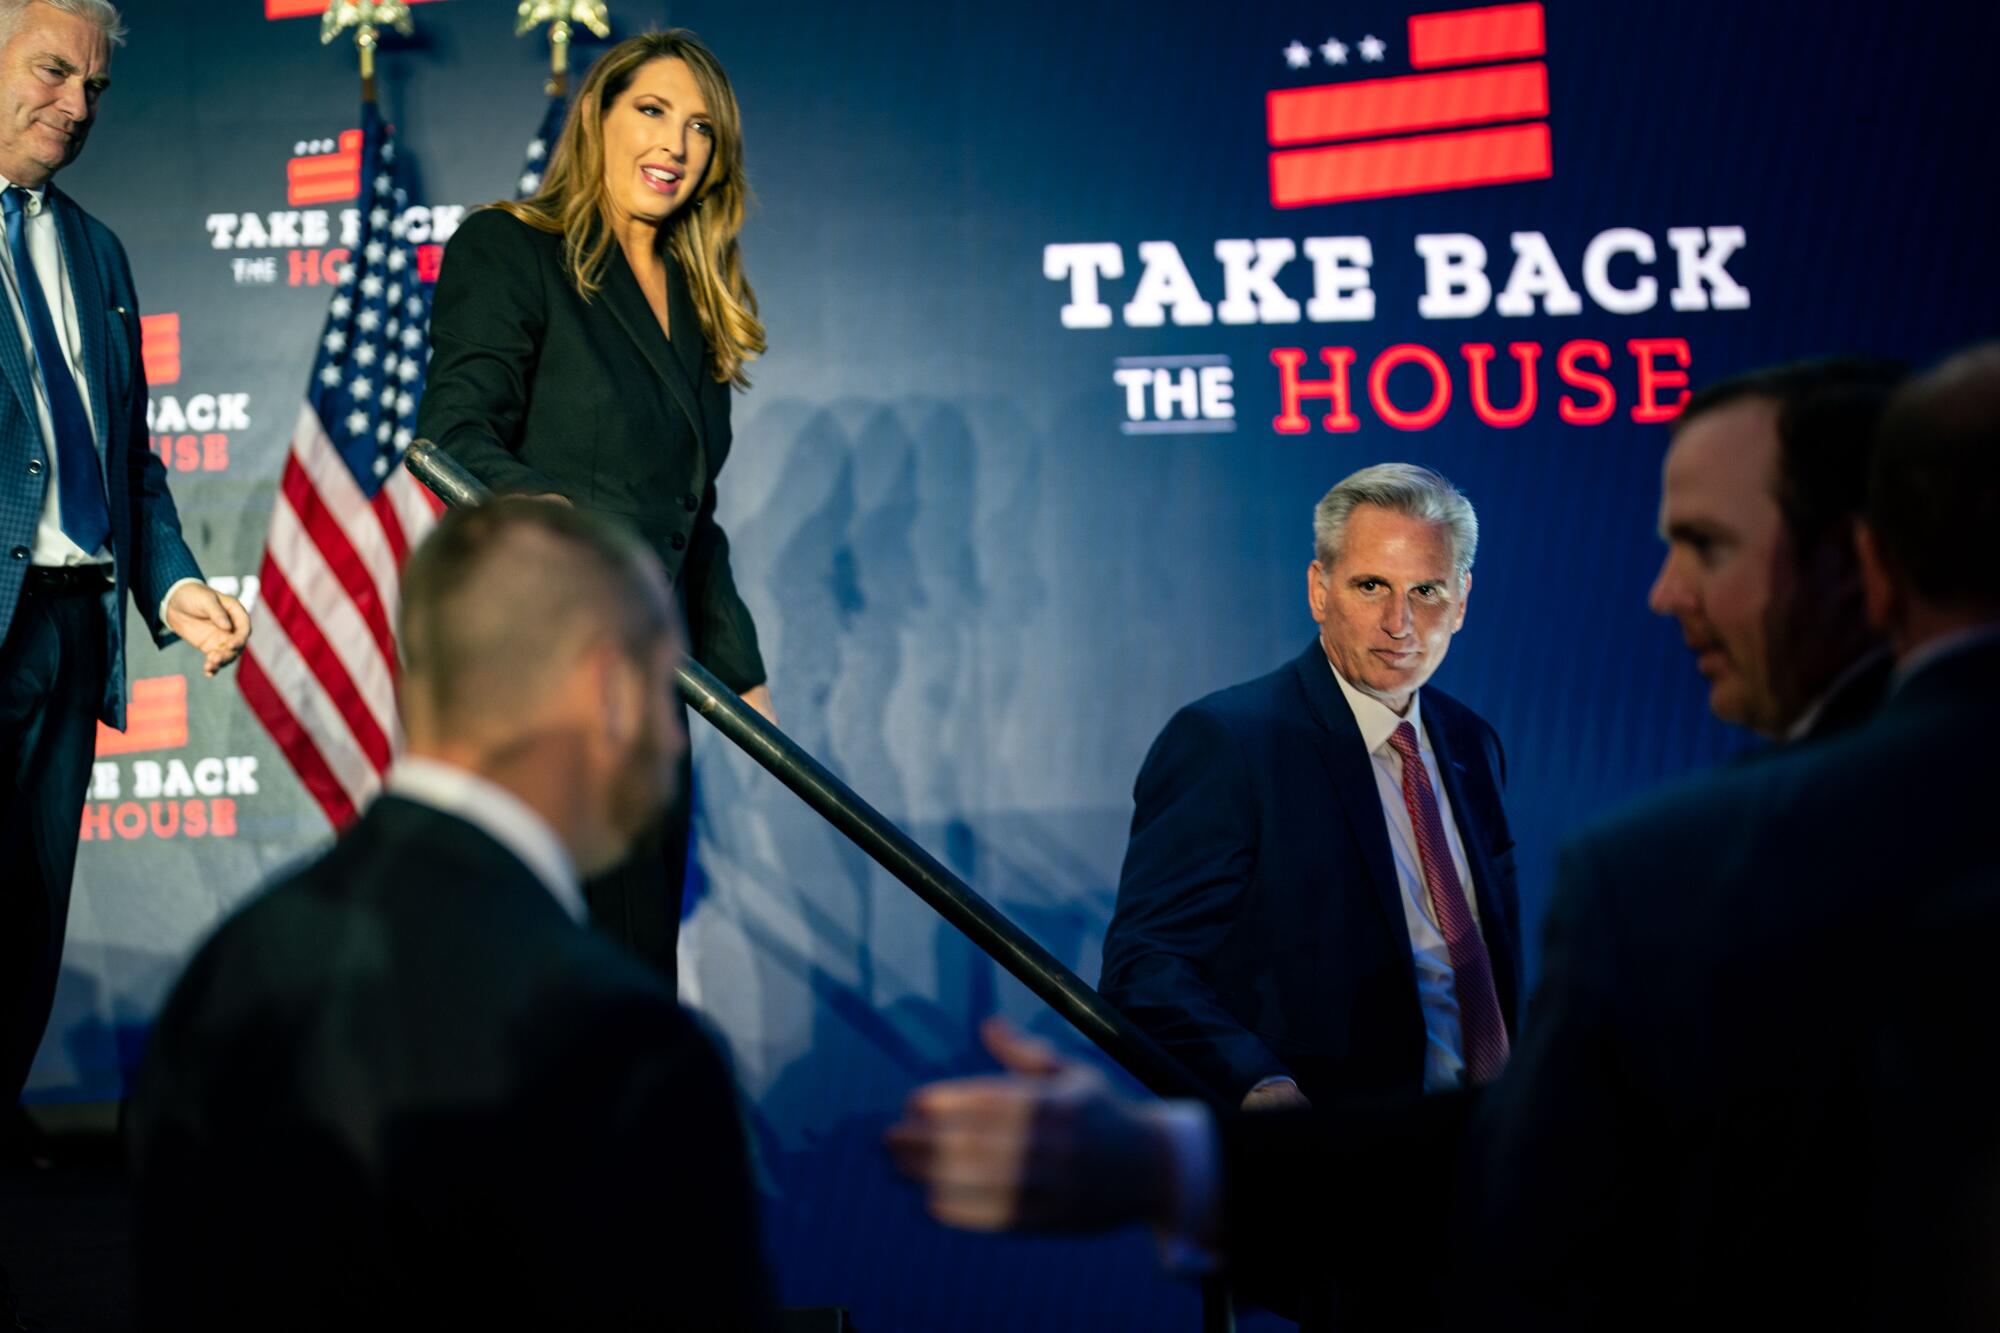 「Take Back the House」と書かれたロゴの近くで、他の人々に混じって階段を降りる男性。